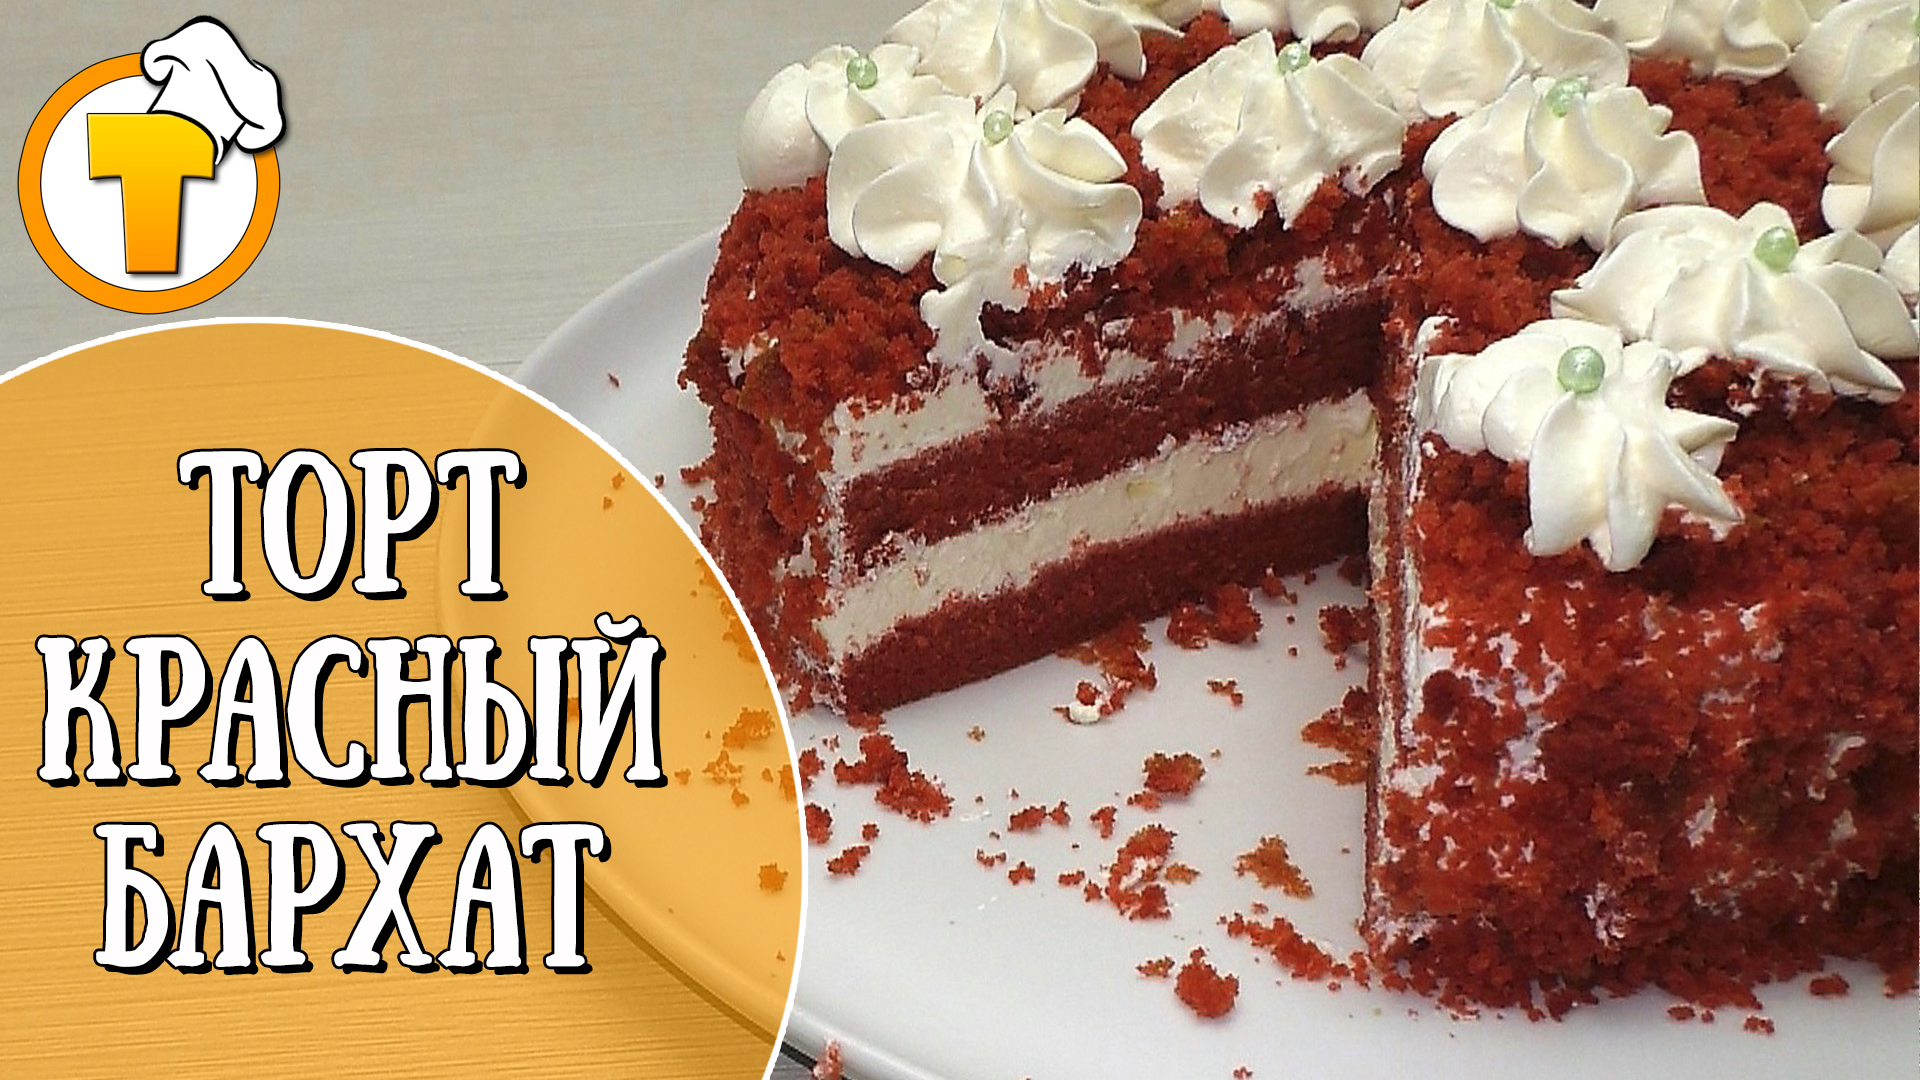 Красный Бархат - самый вкусный торт. Пошаговый рецепт одного из вариантов.